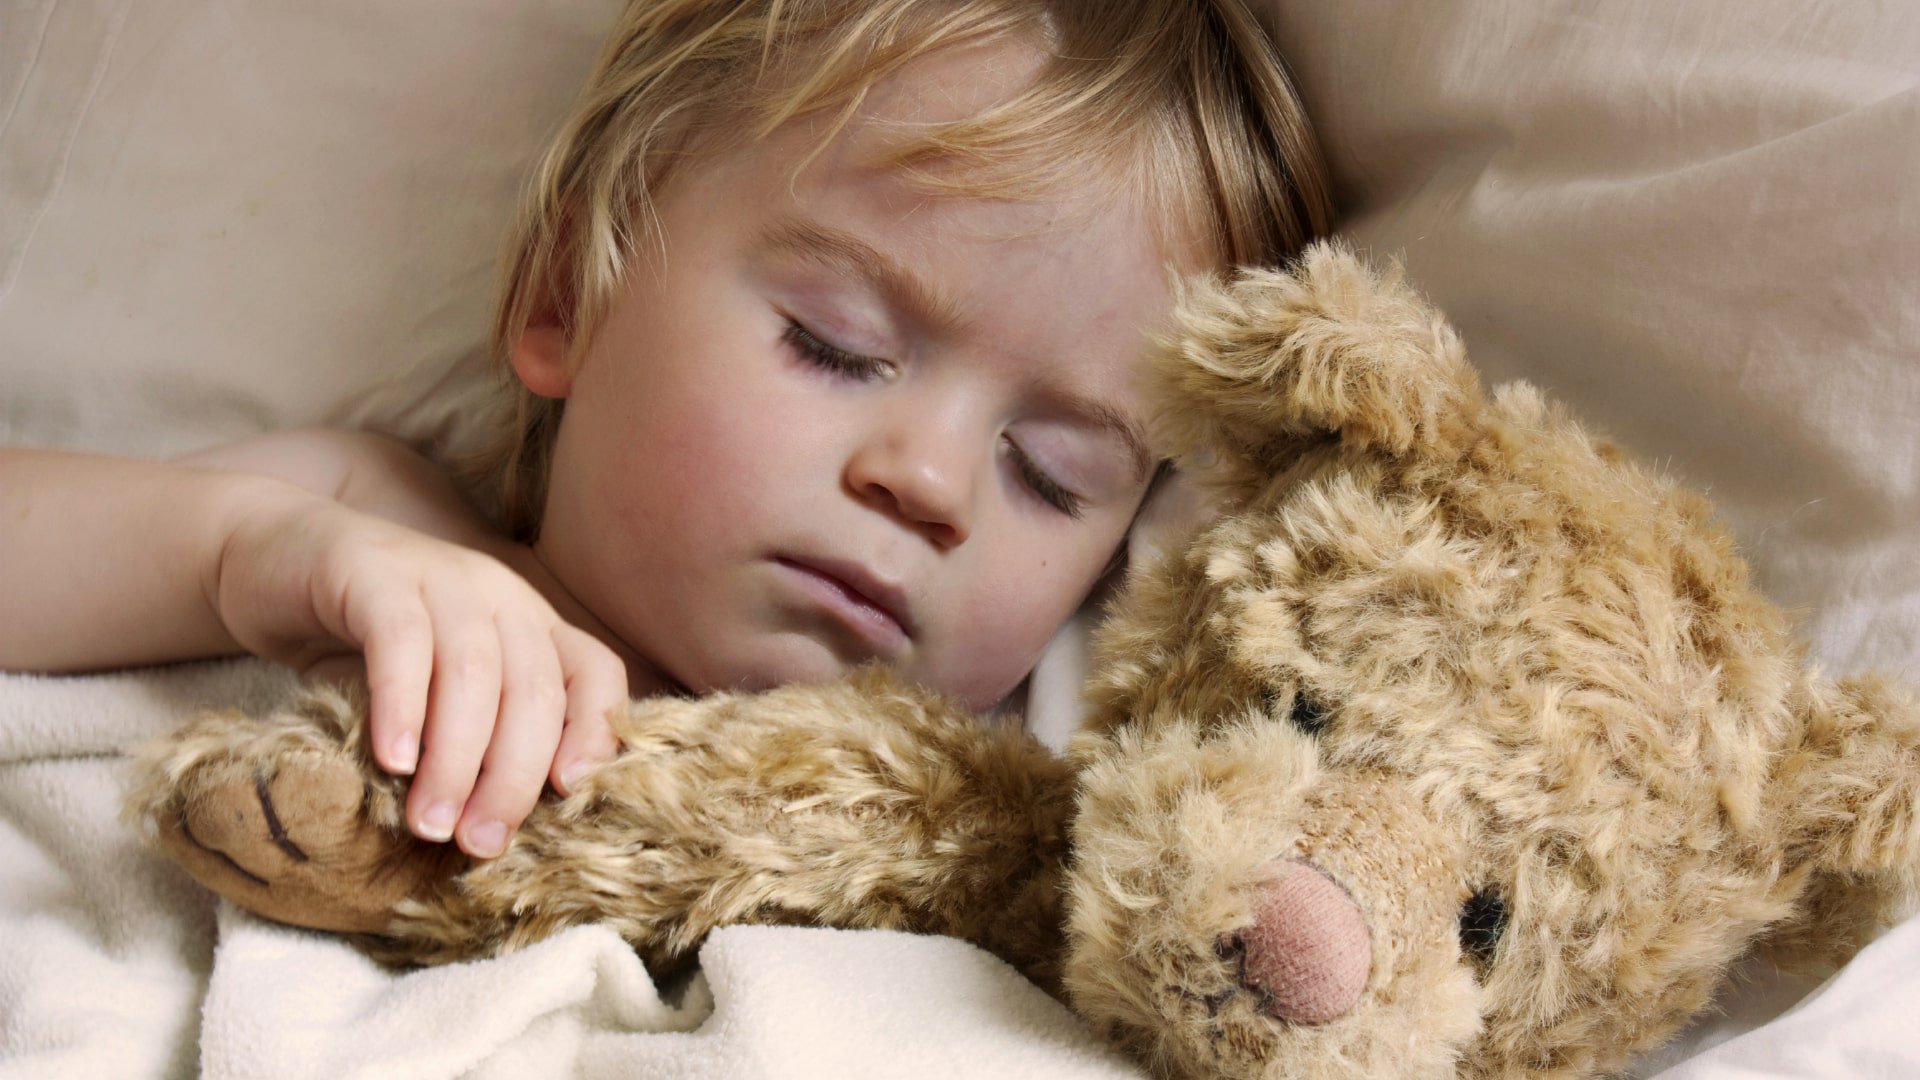 Foto de capa do artigo "Crianças autistas têm mais chances de ter distúrbios do sono"